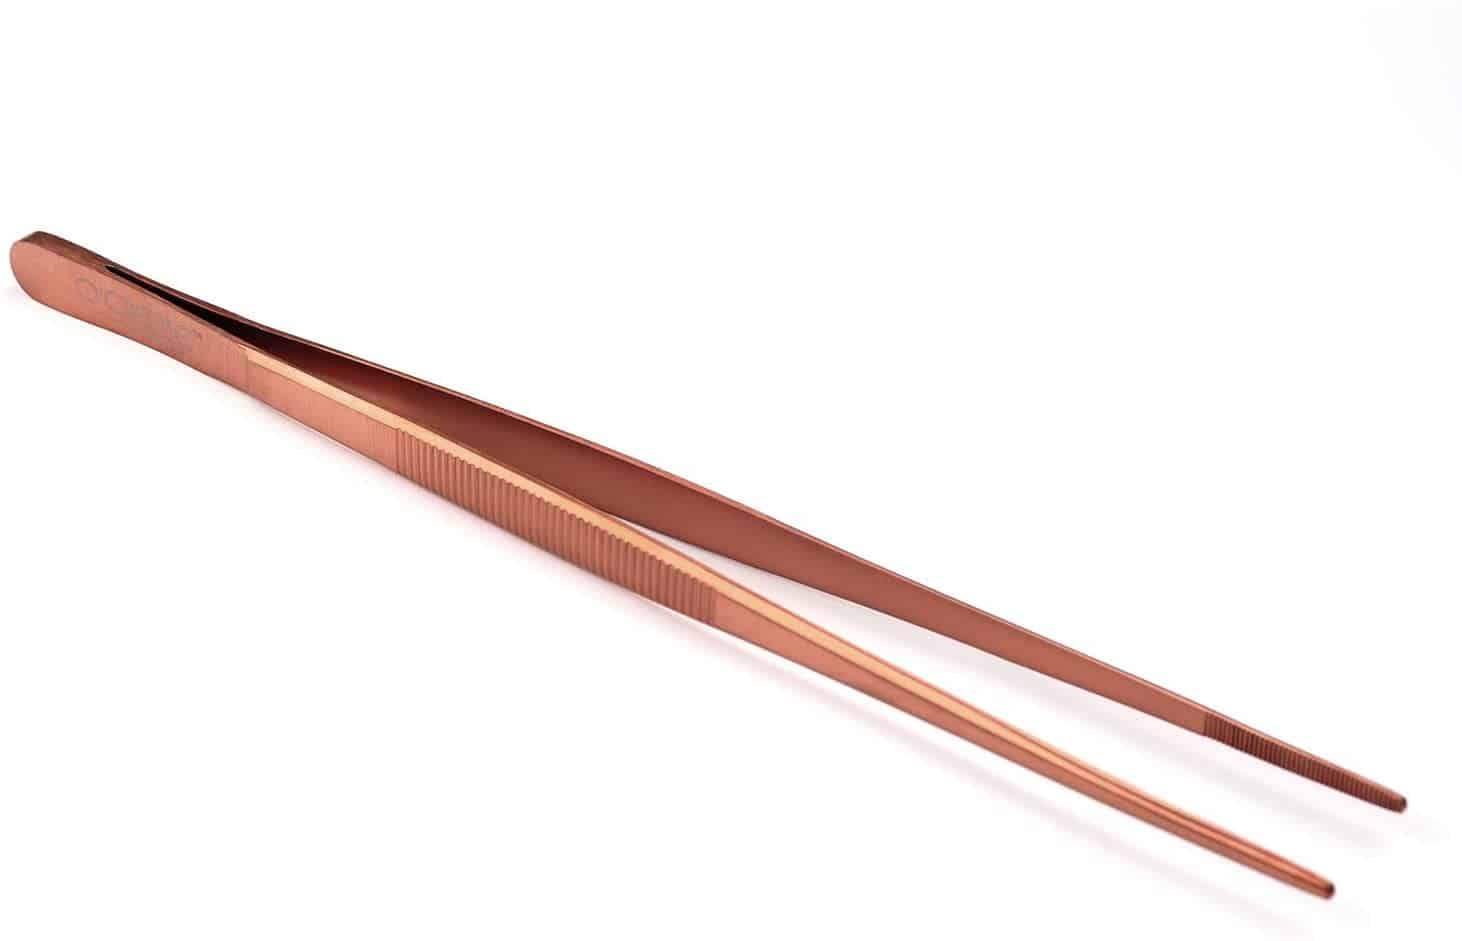 Bästa precisionspincett: O'Creme 10 tums roséguld precisionspincett i rostfritt stål